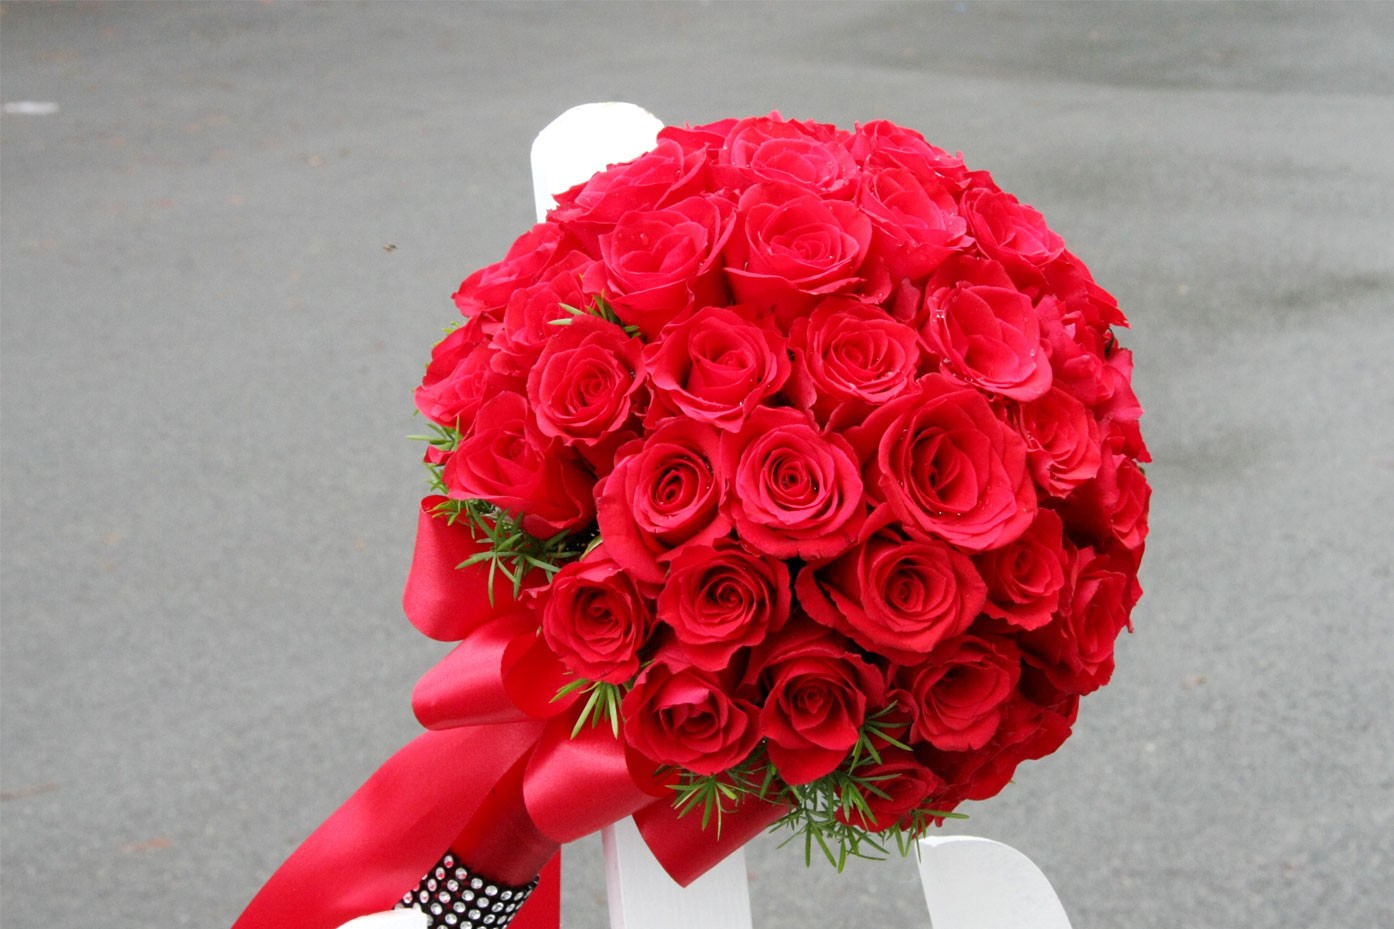 Hoa cưới cầm tay kết từ hoa hồng đỏ